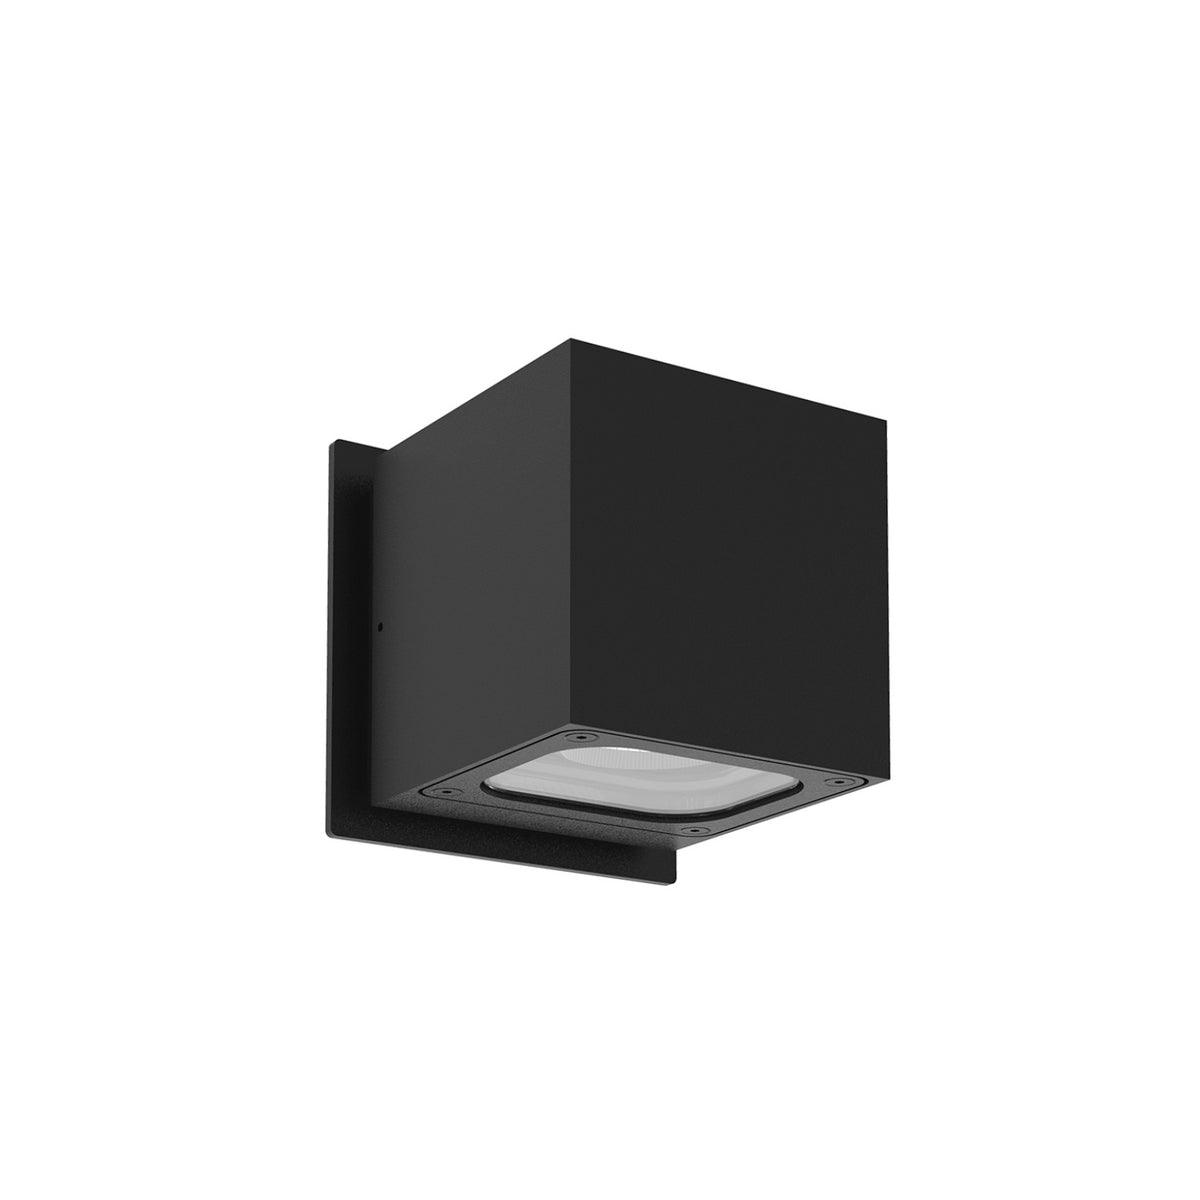 Kuzco Lighting - EW33104-BK - LED Wall Sconce - Stato - Black|Graphite|White